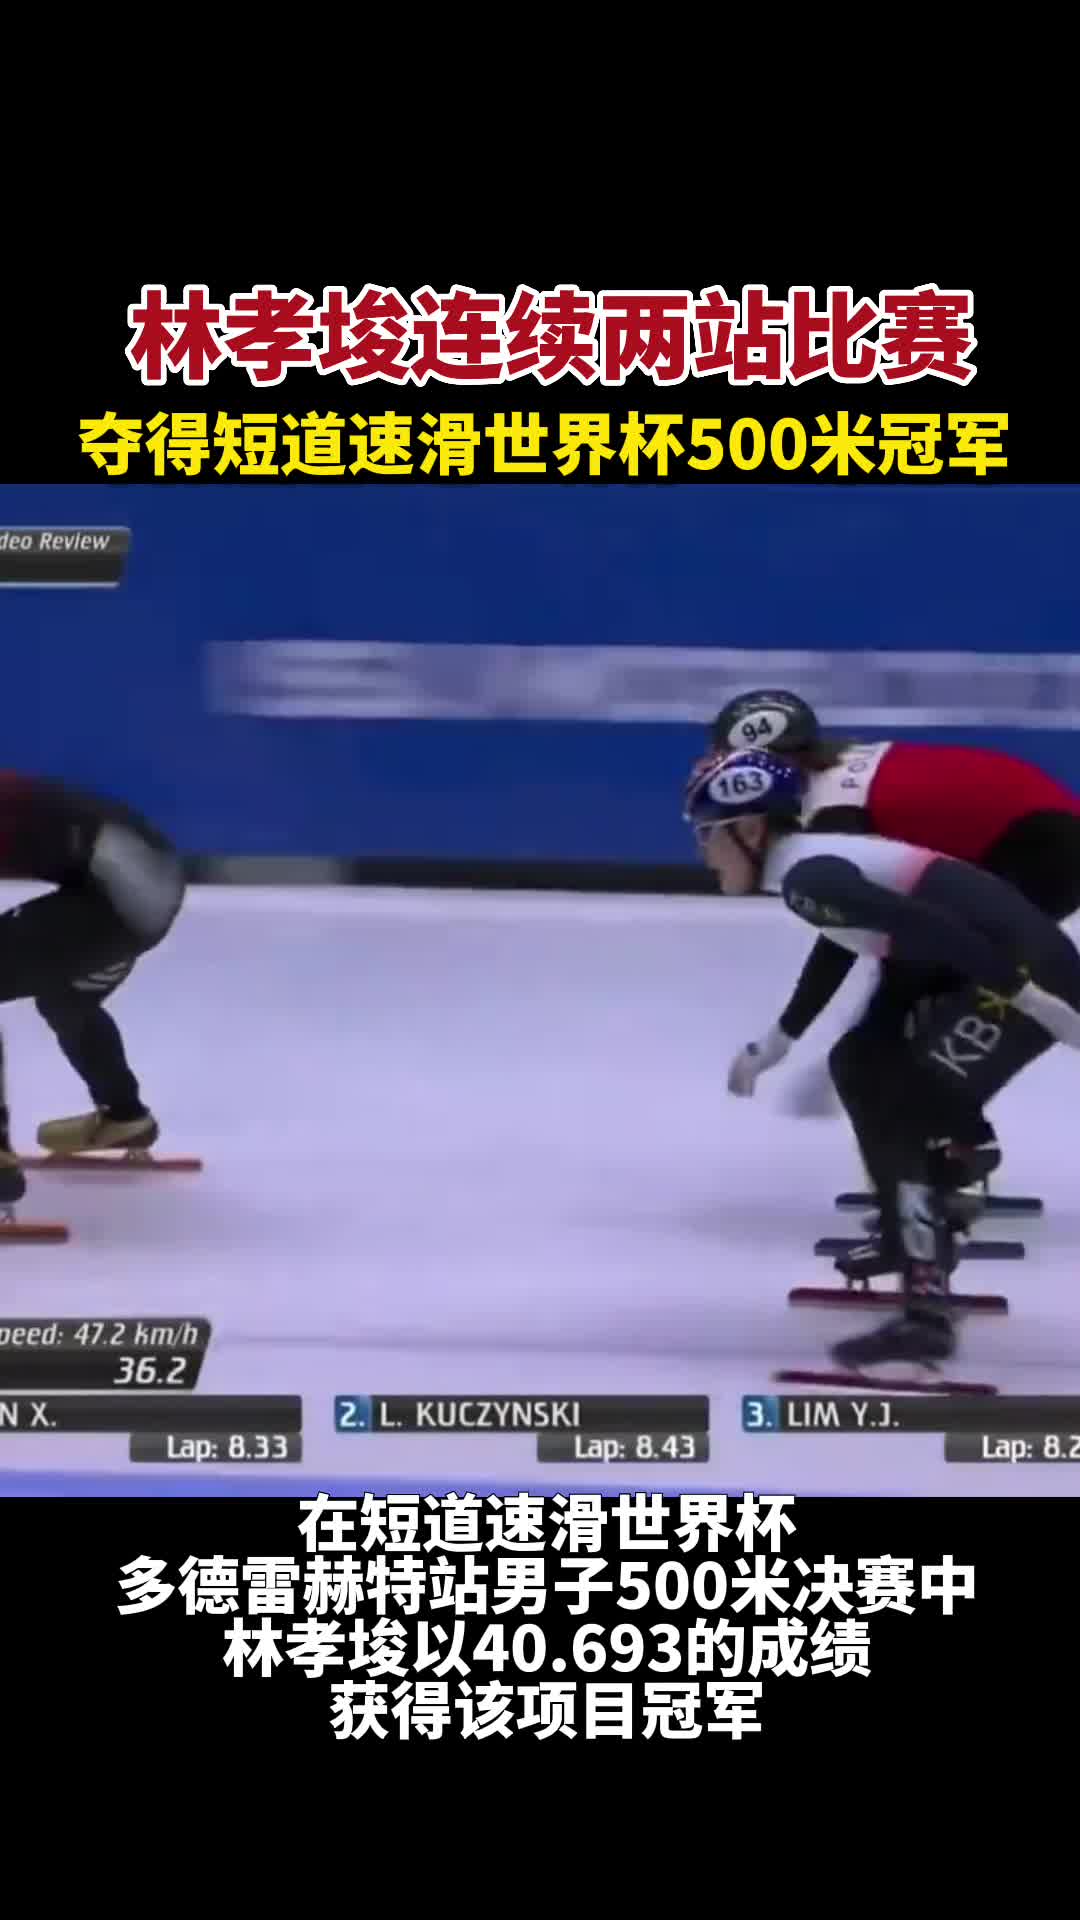 林孝埈连续两站比赛夺得短道速滑世界杯500米冠军